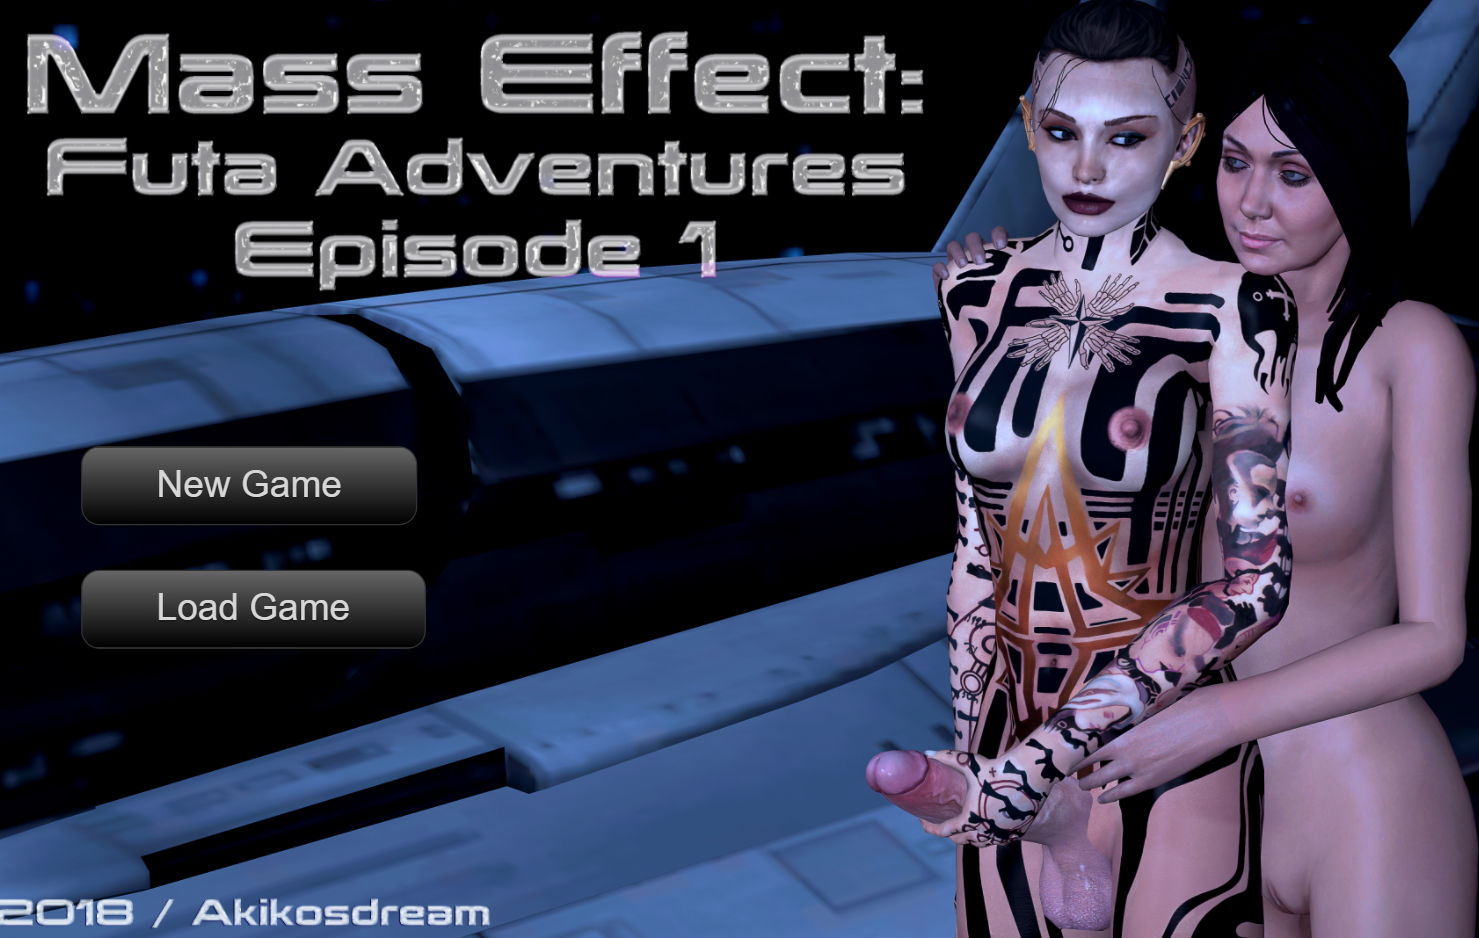 Akikosdream - Mass Effect Futa Adventures Episode 1